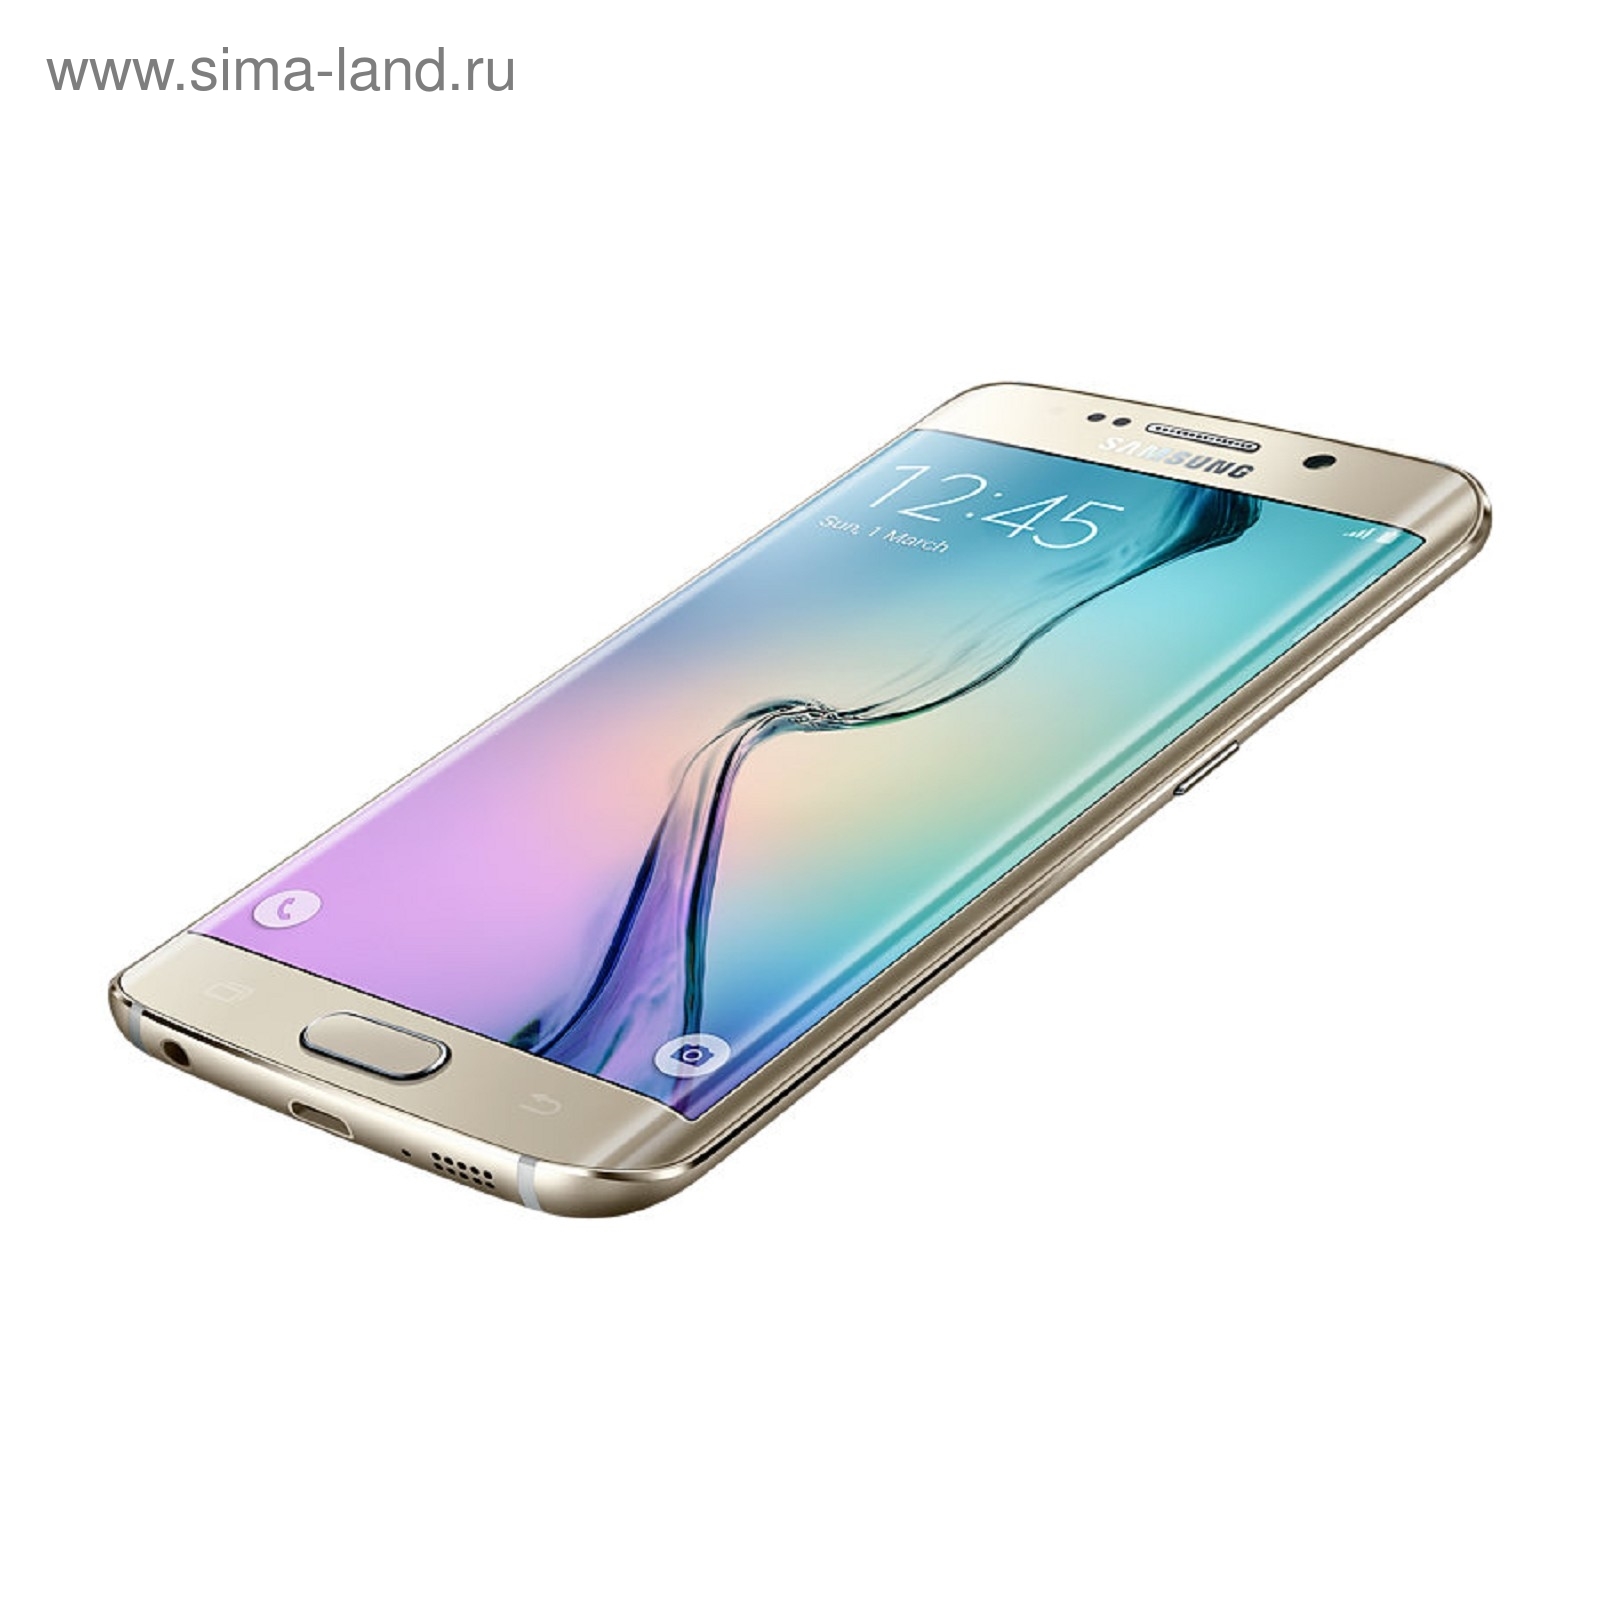 Новый самсунг галакси цена. Samsung Galaxy s6 Edge. Samsung Galaxy s6 Edge 64gb. Samsung s6 Edge 2022. Самсунг галакси а6 ультратонкий.